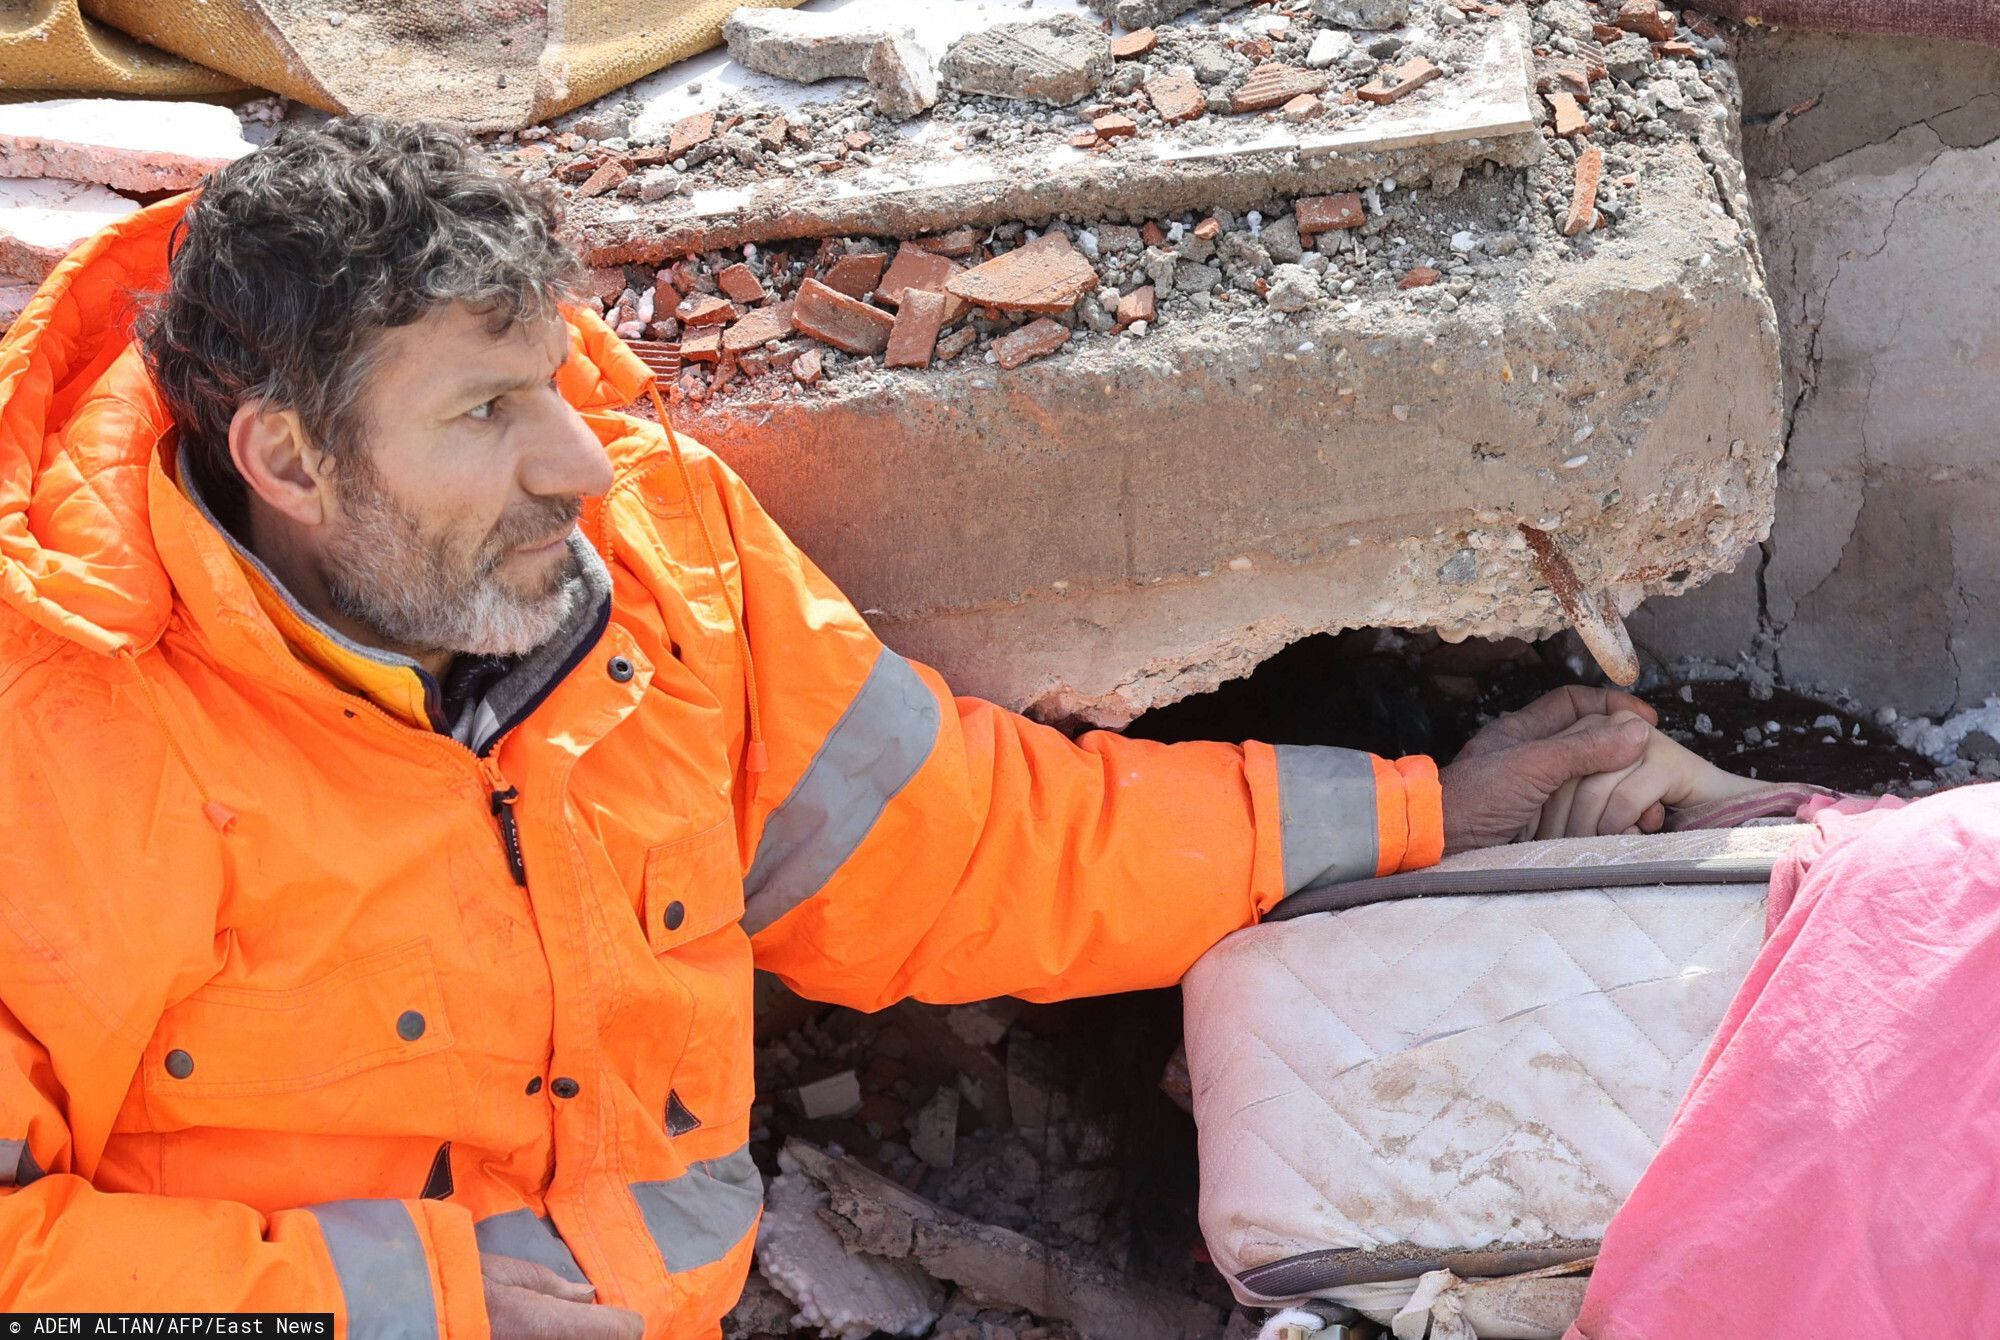 Raport Gońca ze Świata. Trzęsienie ziemi w Turcji